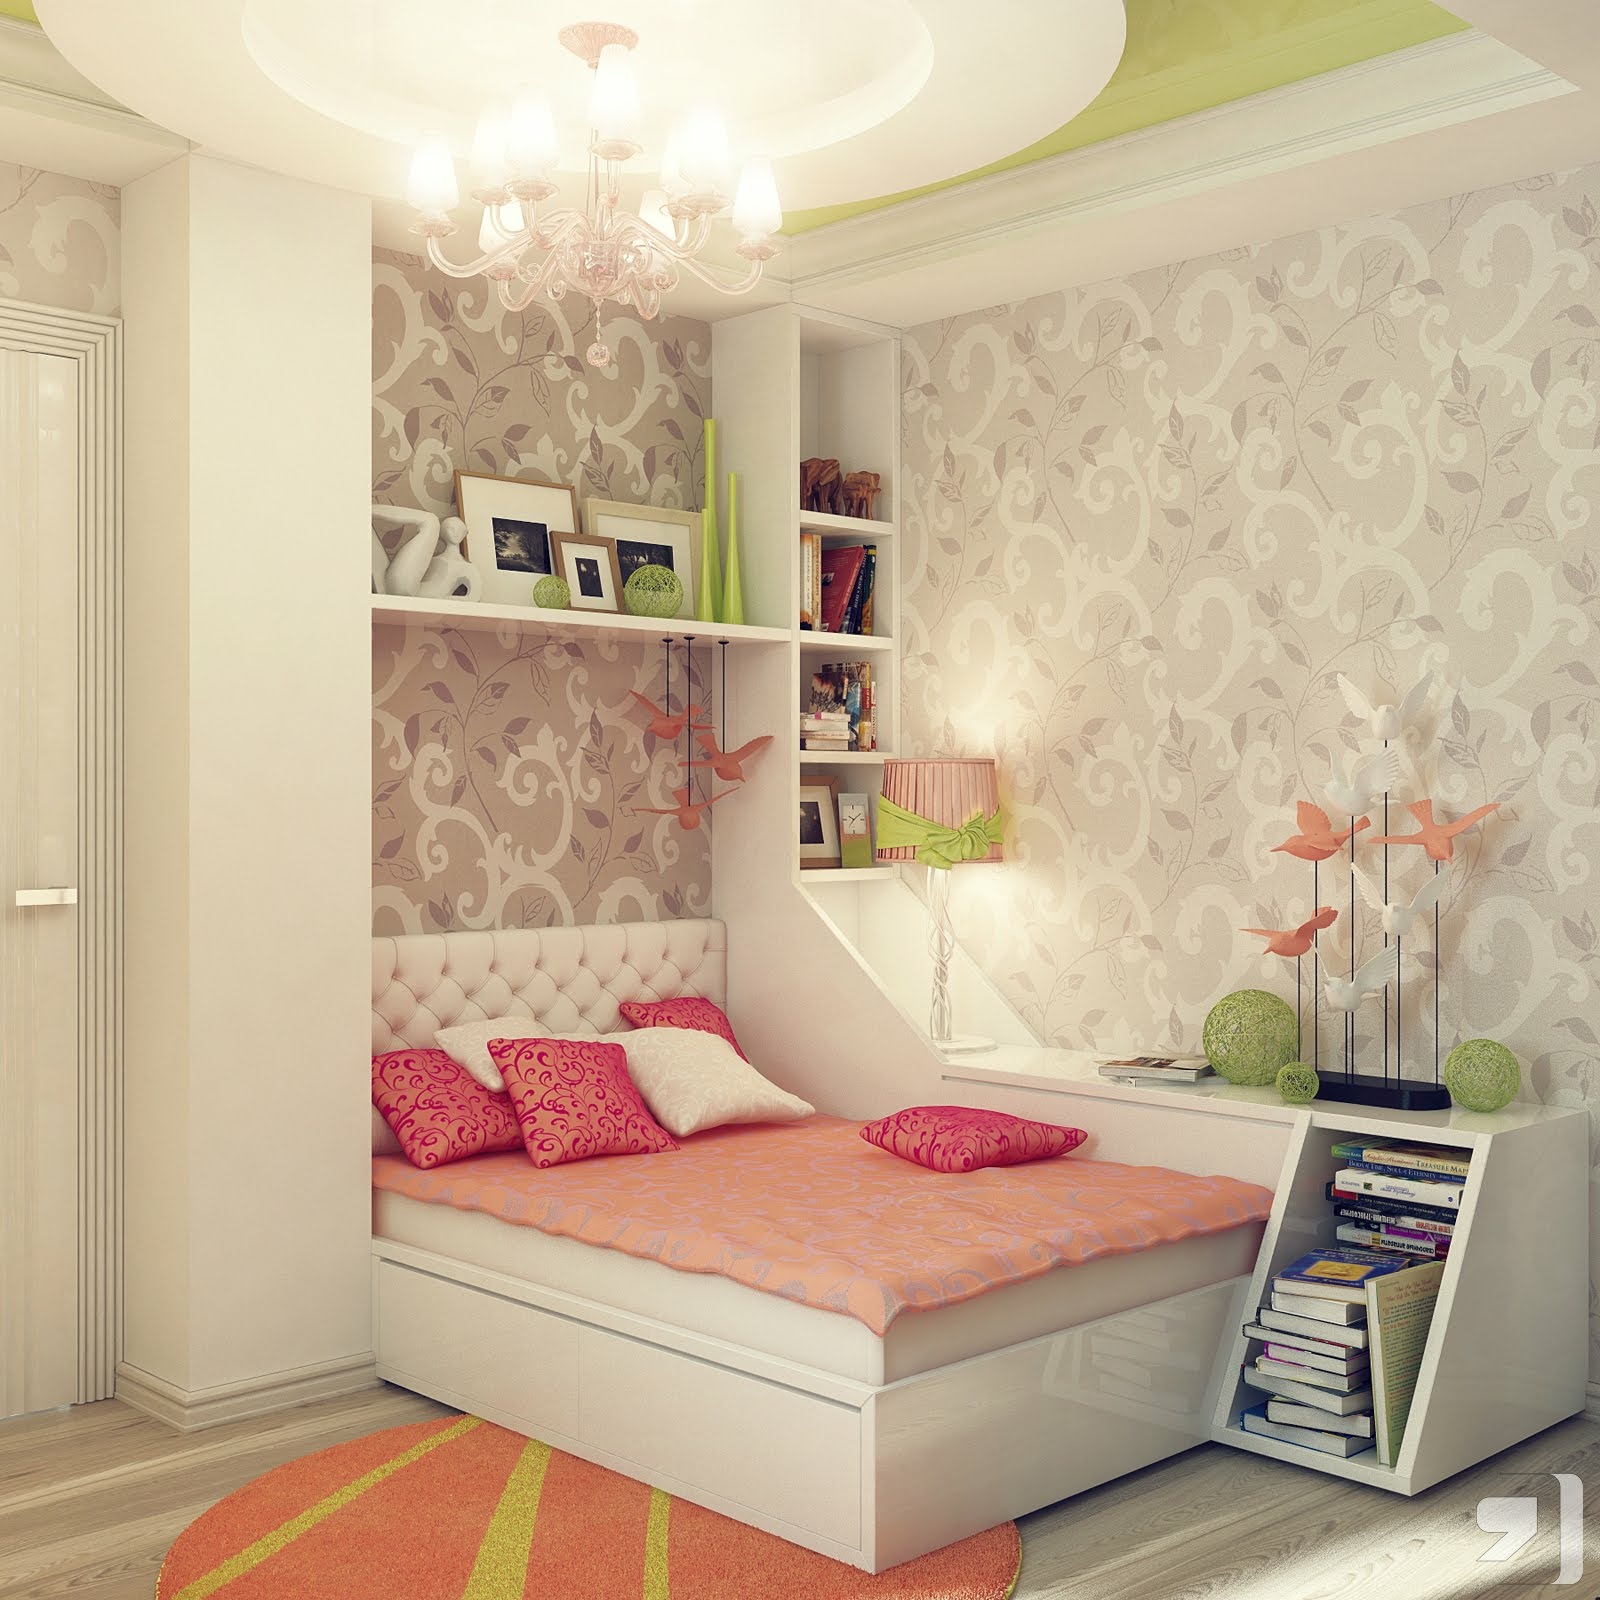 Girls bedroom decor "width =" 1600 "height =" 1600 "srcset =" https://mileray.com/wp-content/uploads/2020/05/1588511533_50_25-Bedroom-Paint-Ideas-For-Teenage-Girl.jpeg 1600w, https://mileray.com/wp-content/uploads/2016/04/1b-Peach-green-gray-girls-bedroom-decor-150x150.jpeg 150w, https://mileray.com/wp-content /uploads/2016/04/1b-Peach-green-gray-girls-bedroom-decor-300x300.jpeg 300w, https://mileray.com/wp-content/uploads/2016/04/1b-Peach-green- gray-girl-bedroom-decor-768x768.jpeg 768w, https://mileray.com/wp-content/uploads/2016/04/1b-Peach-green-gray-girls-bedroom-decor-1024x1024.jpeg 1024w, https://mileray.com/wp-content/uploads/2016/04/1b-Peach-green-gray-girls-bedroom-decor-696x696.jpeg 696w, https://mileray.com/wp-content/uploads /2016/04/1b-Peach-green-gray-girls-bedroom-decor-1068x1068.jpeg 1068w, https://mileray.com/wp-content/uploads/2016/04/1b-Peach-green-gray- Girl-bedroom-decor-420x420.jpeg 420w "sizes =" (maximum width: 1600px) 100vw, 1600px